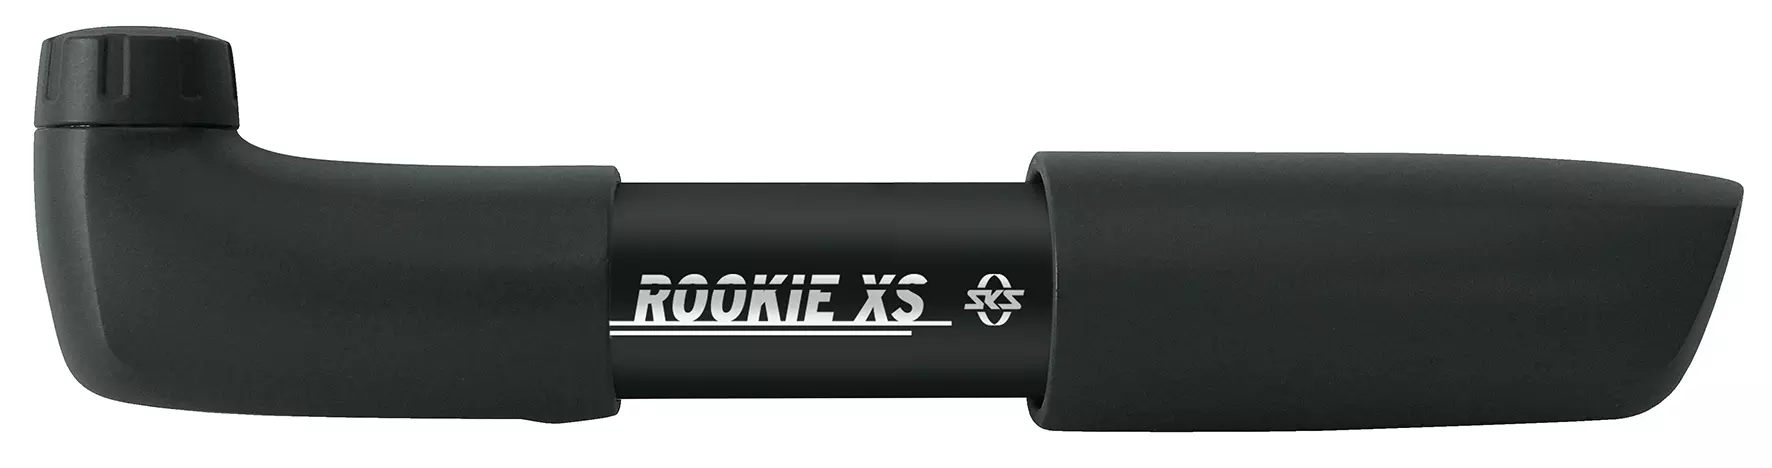 sks rookie xl mini pump